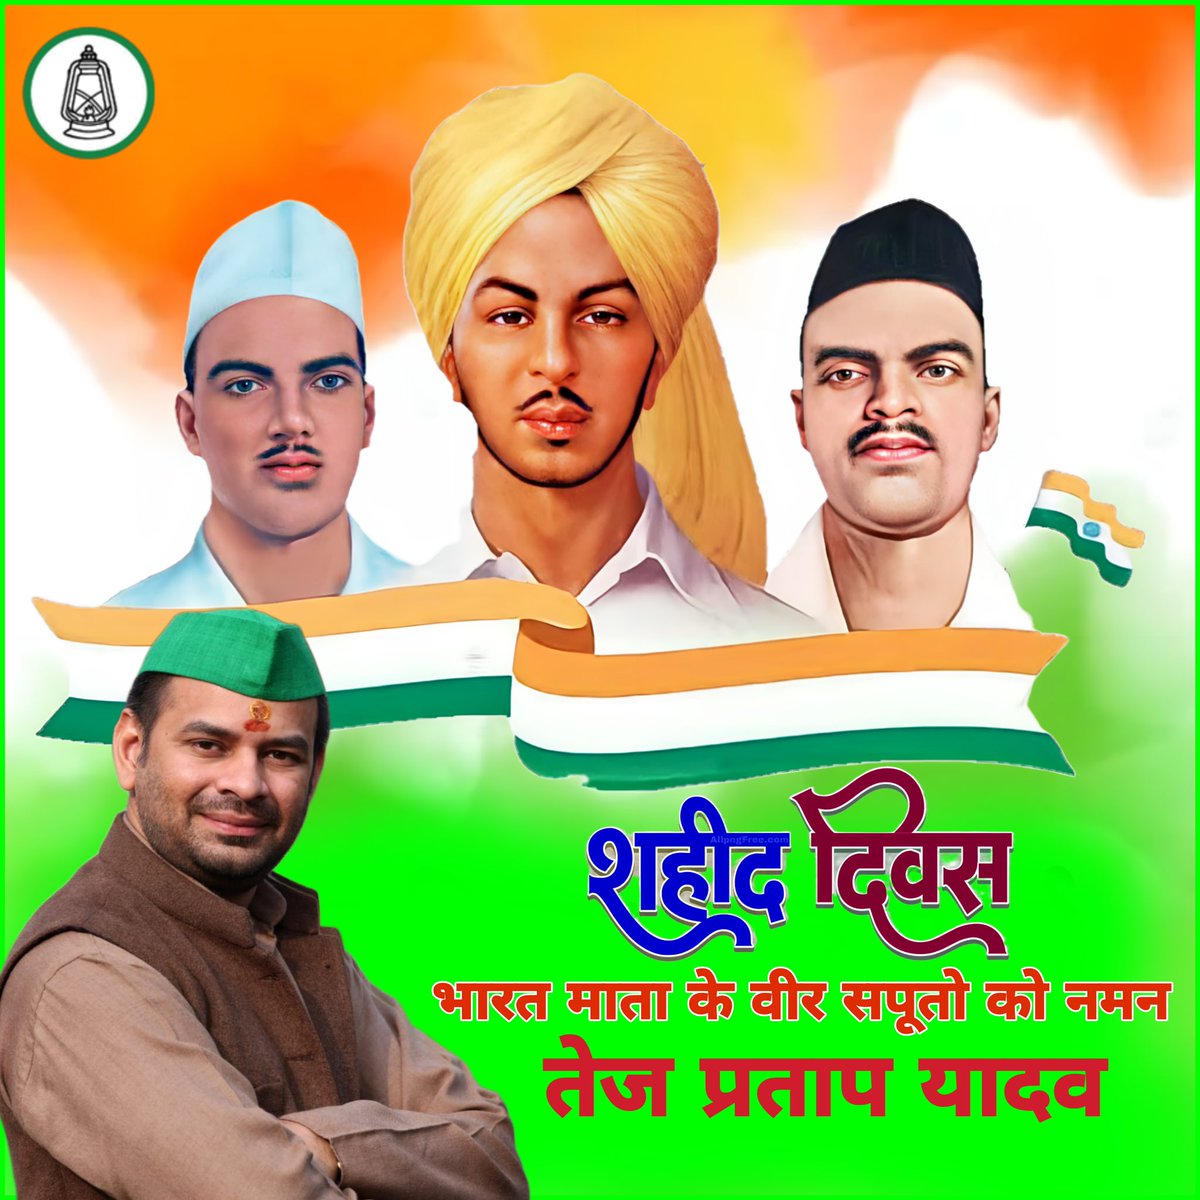 देश के लिए अपने प्राणों की आहुति देने वाले अमर शहीद भगत सिंह, सुखदेव और राजगुरु को बलिदान दिवस पर कोटि-कोटि नमन 🙏🇮🇳 #BhagatSingh #ShaheedDiwas